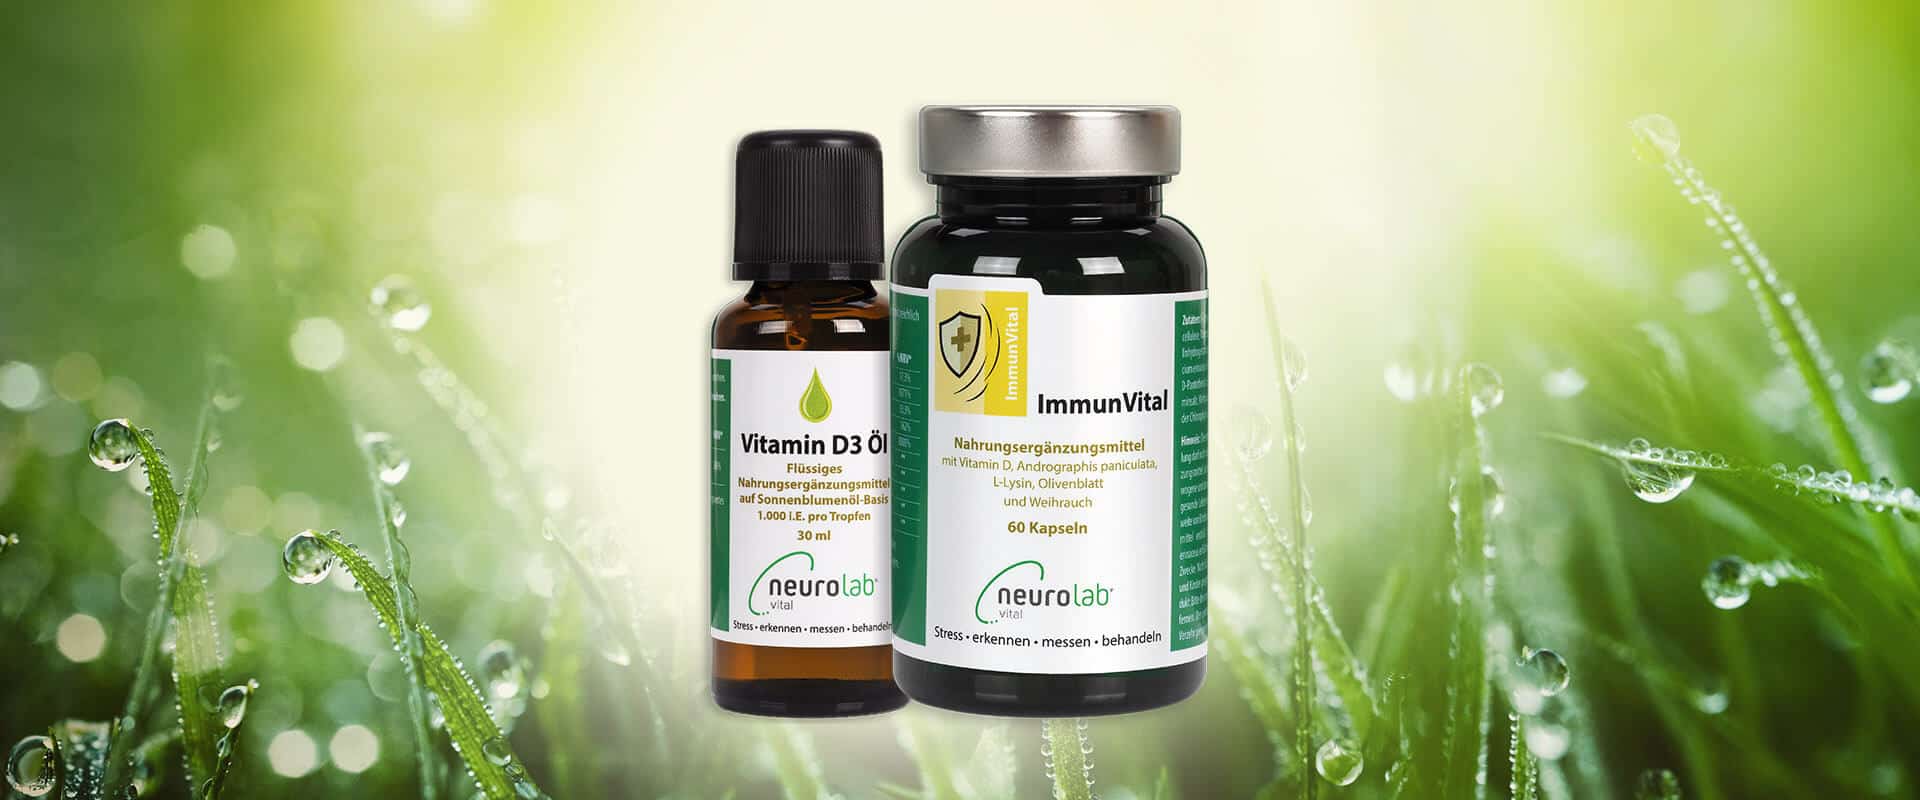 ImmunVital und Vitamin D3 Öl in freier Natur